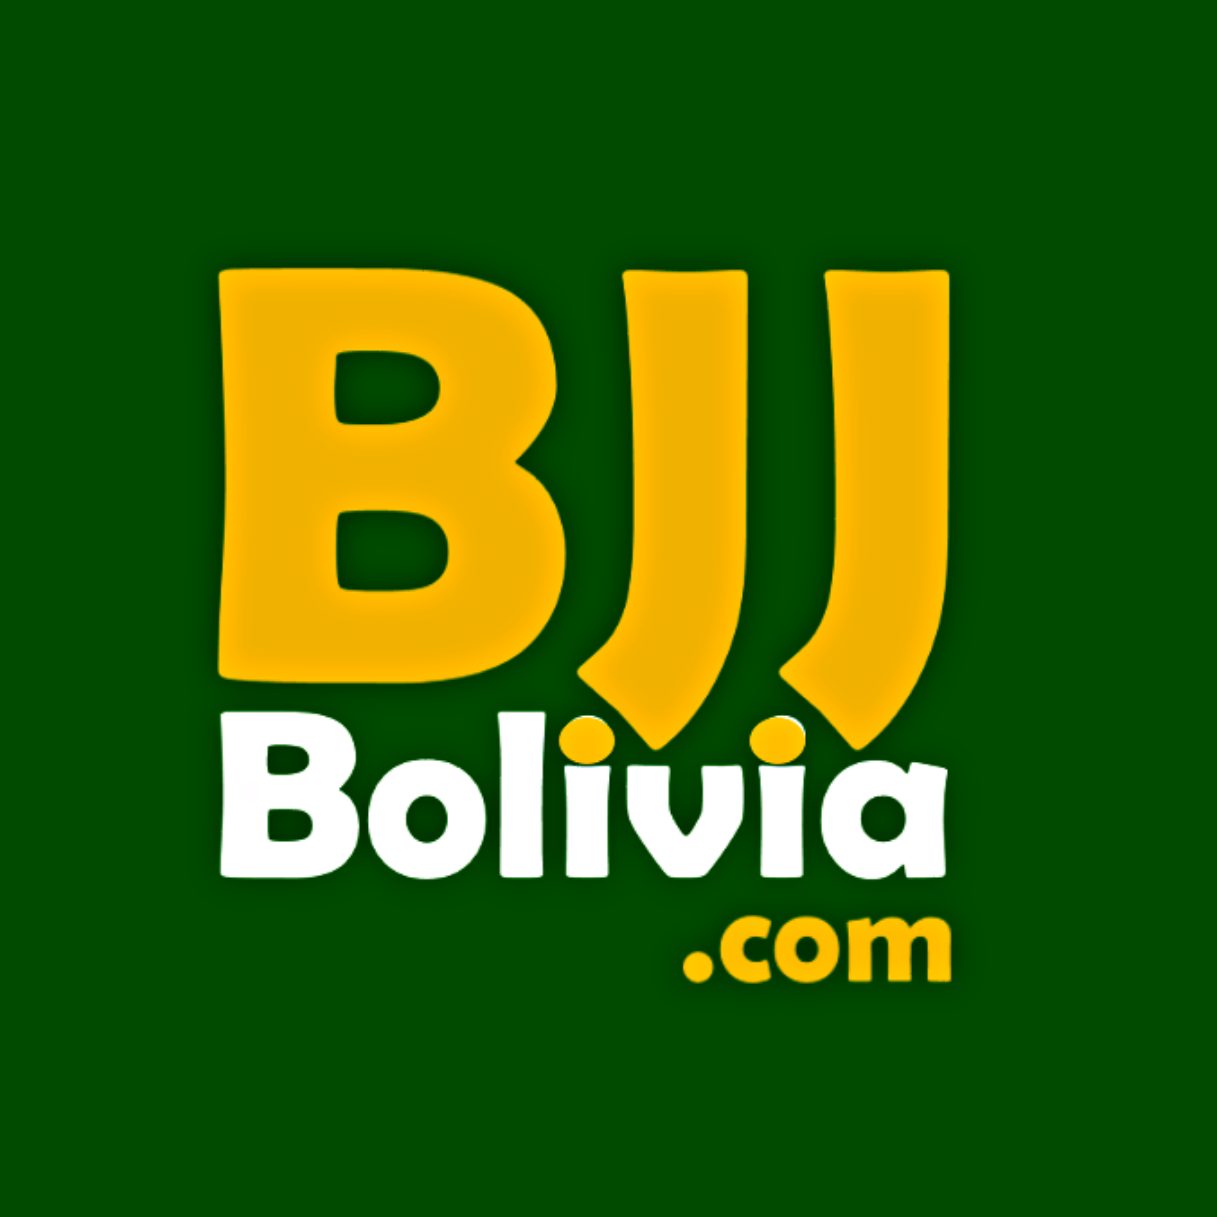 BJJ Bolivia